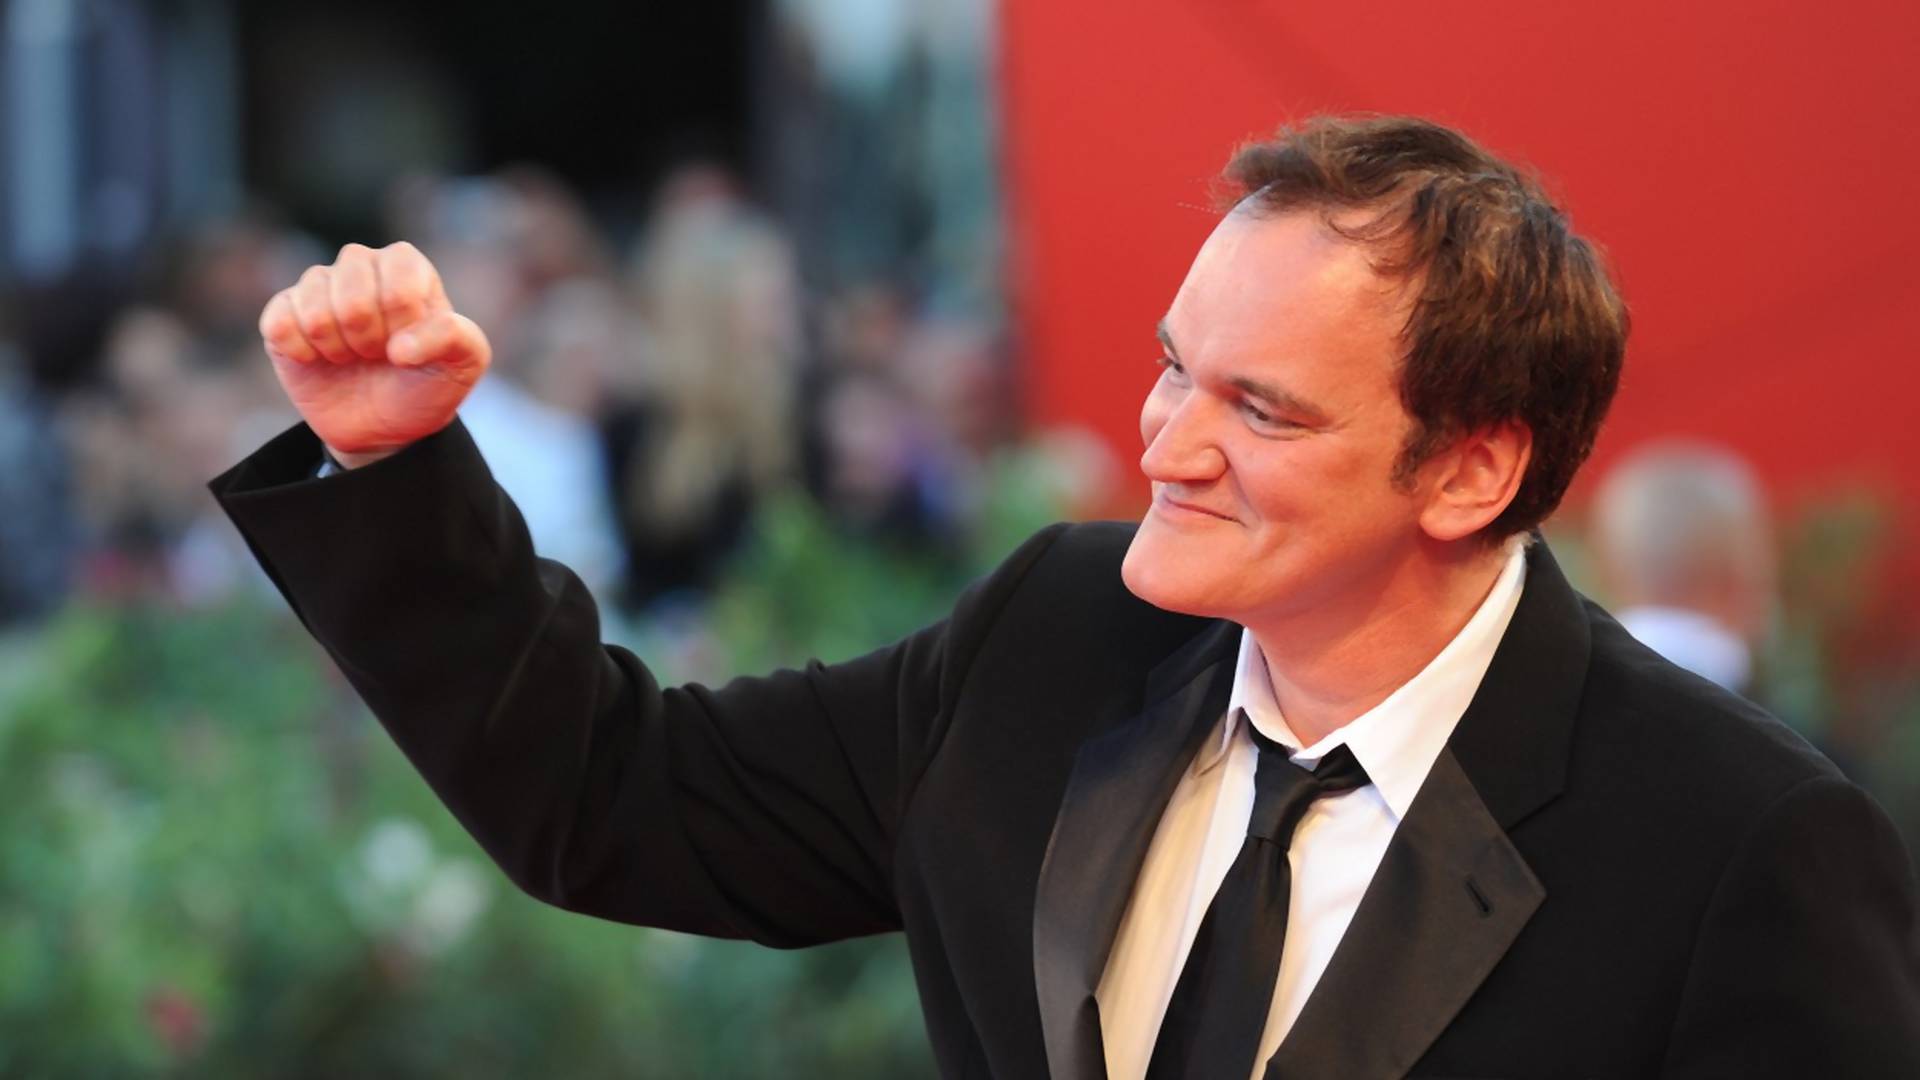 Tarantino pravi film o najpoznatijem ubici - Čarlsu Mensonu